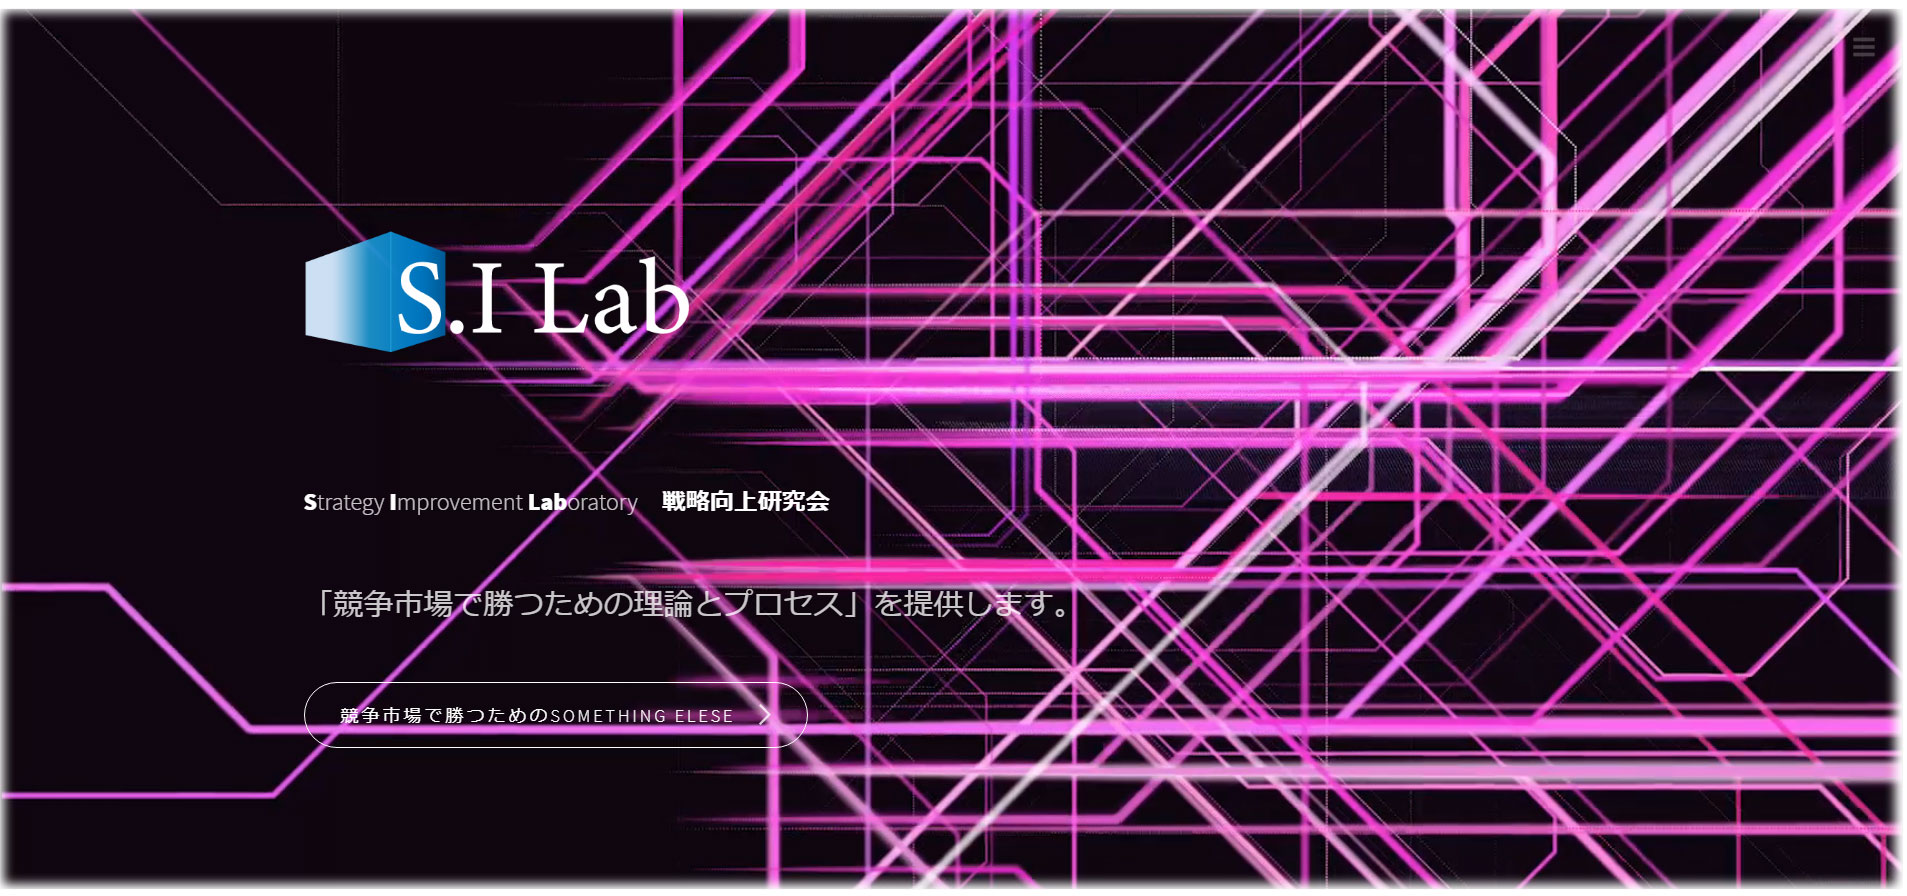 S.I_Lab